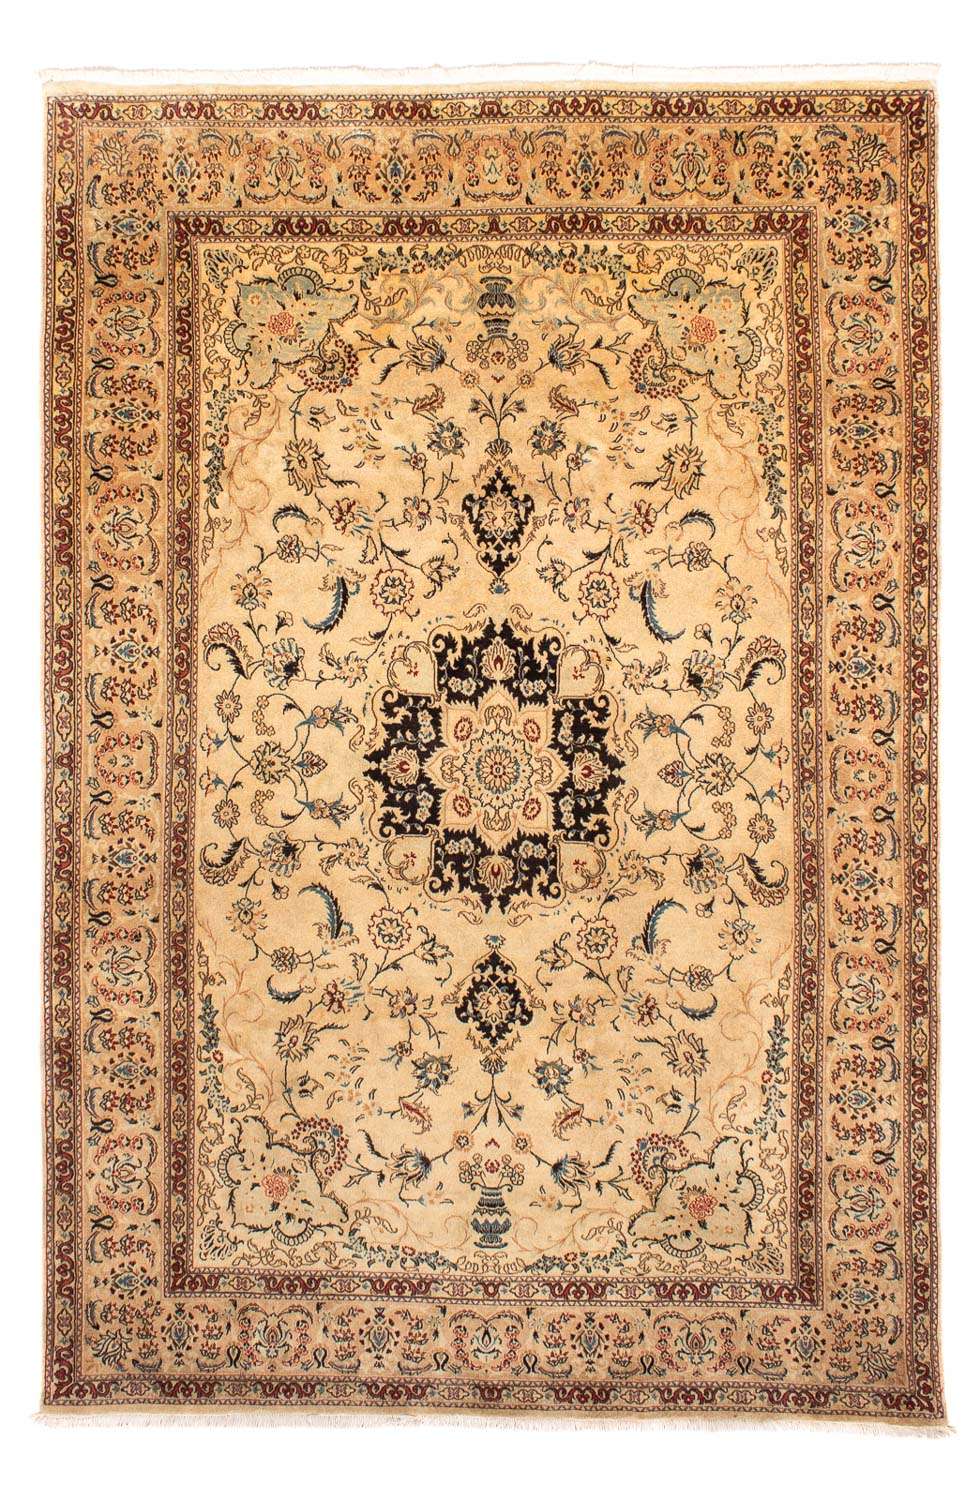 Tapis persan - Classique - 295 x 198 cm - beige clair